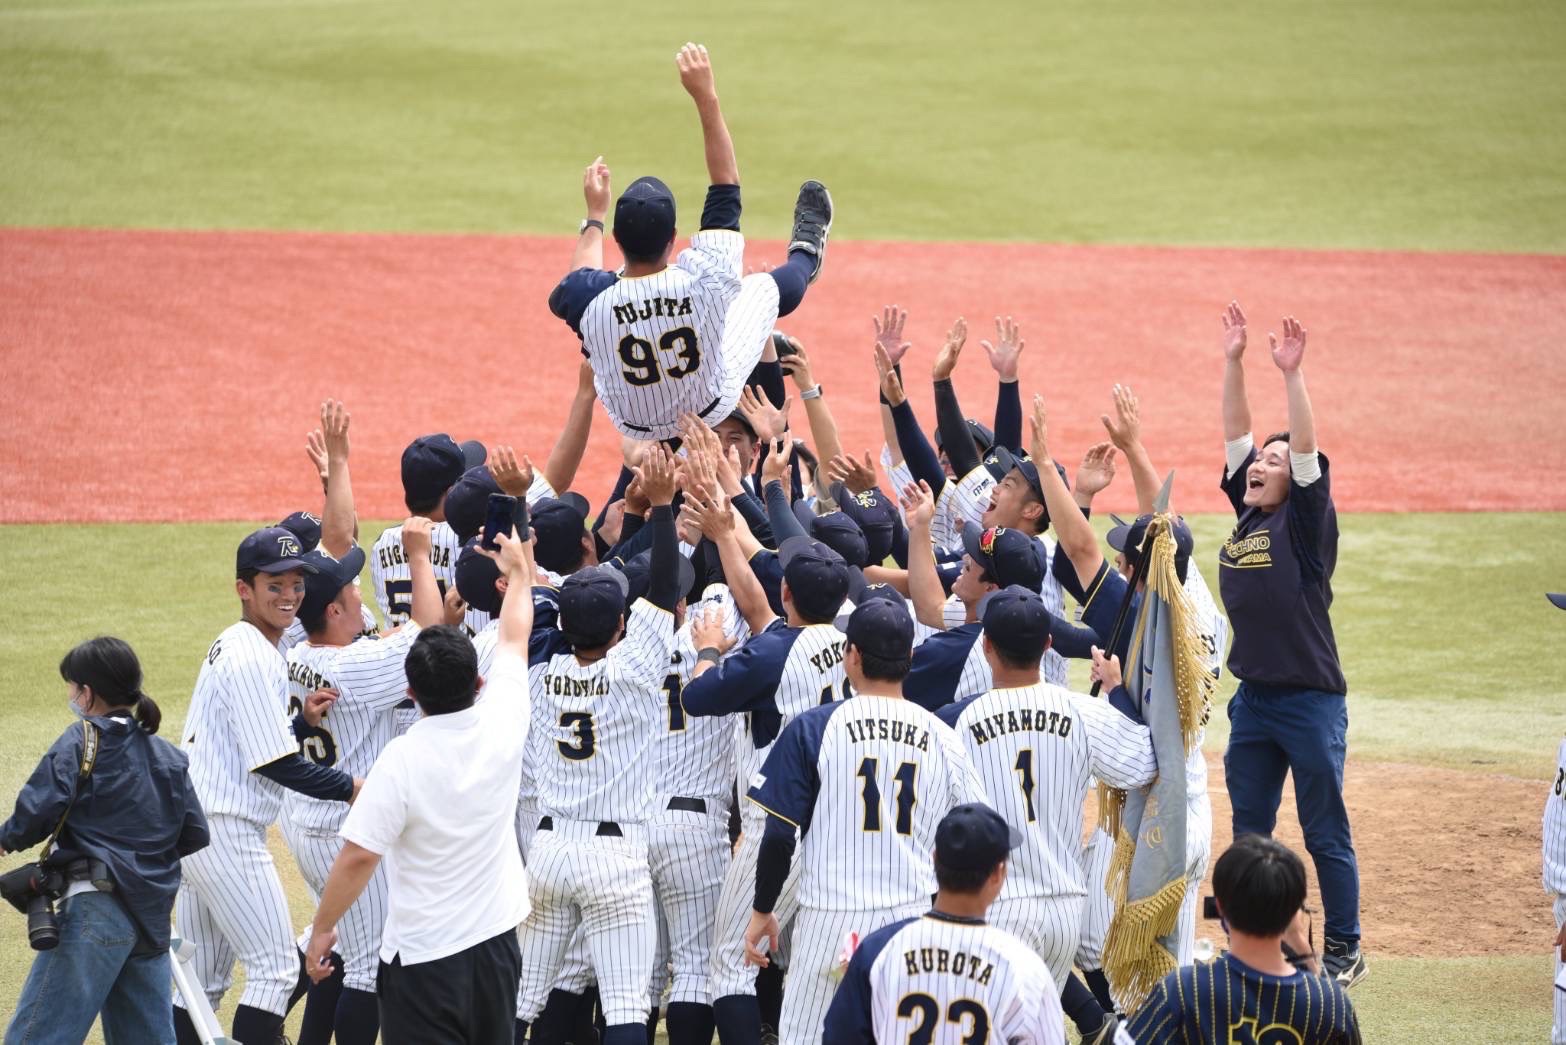 ロキグループが運営する社会人硬式野球チーム「ロキテクノ富山」が第93回都市対抗野球大会本戦に出場します。